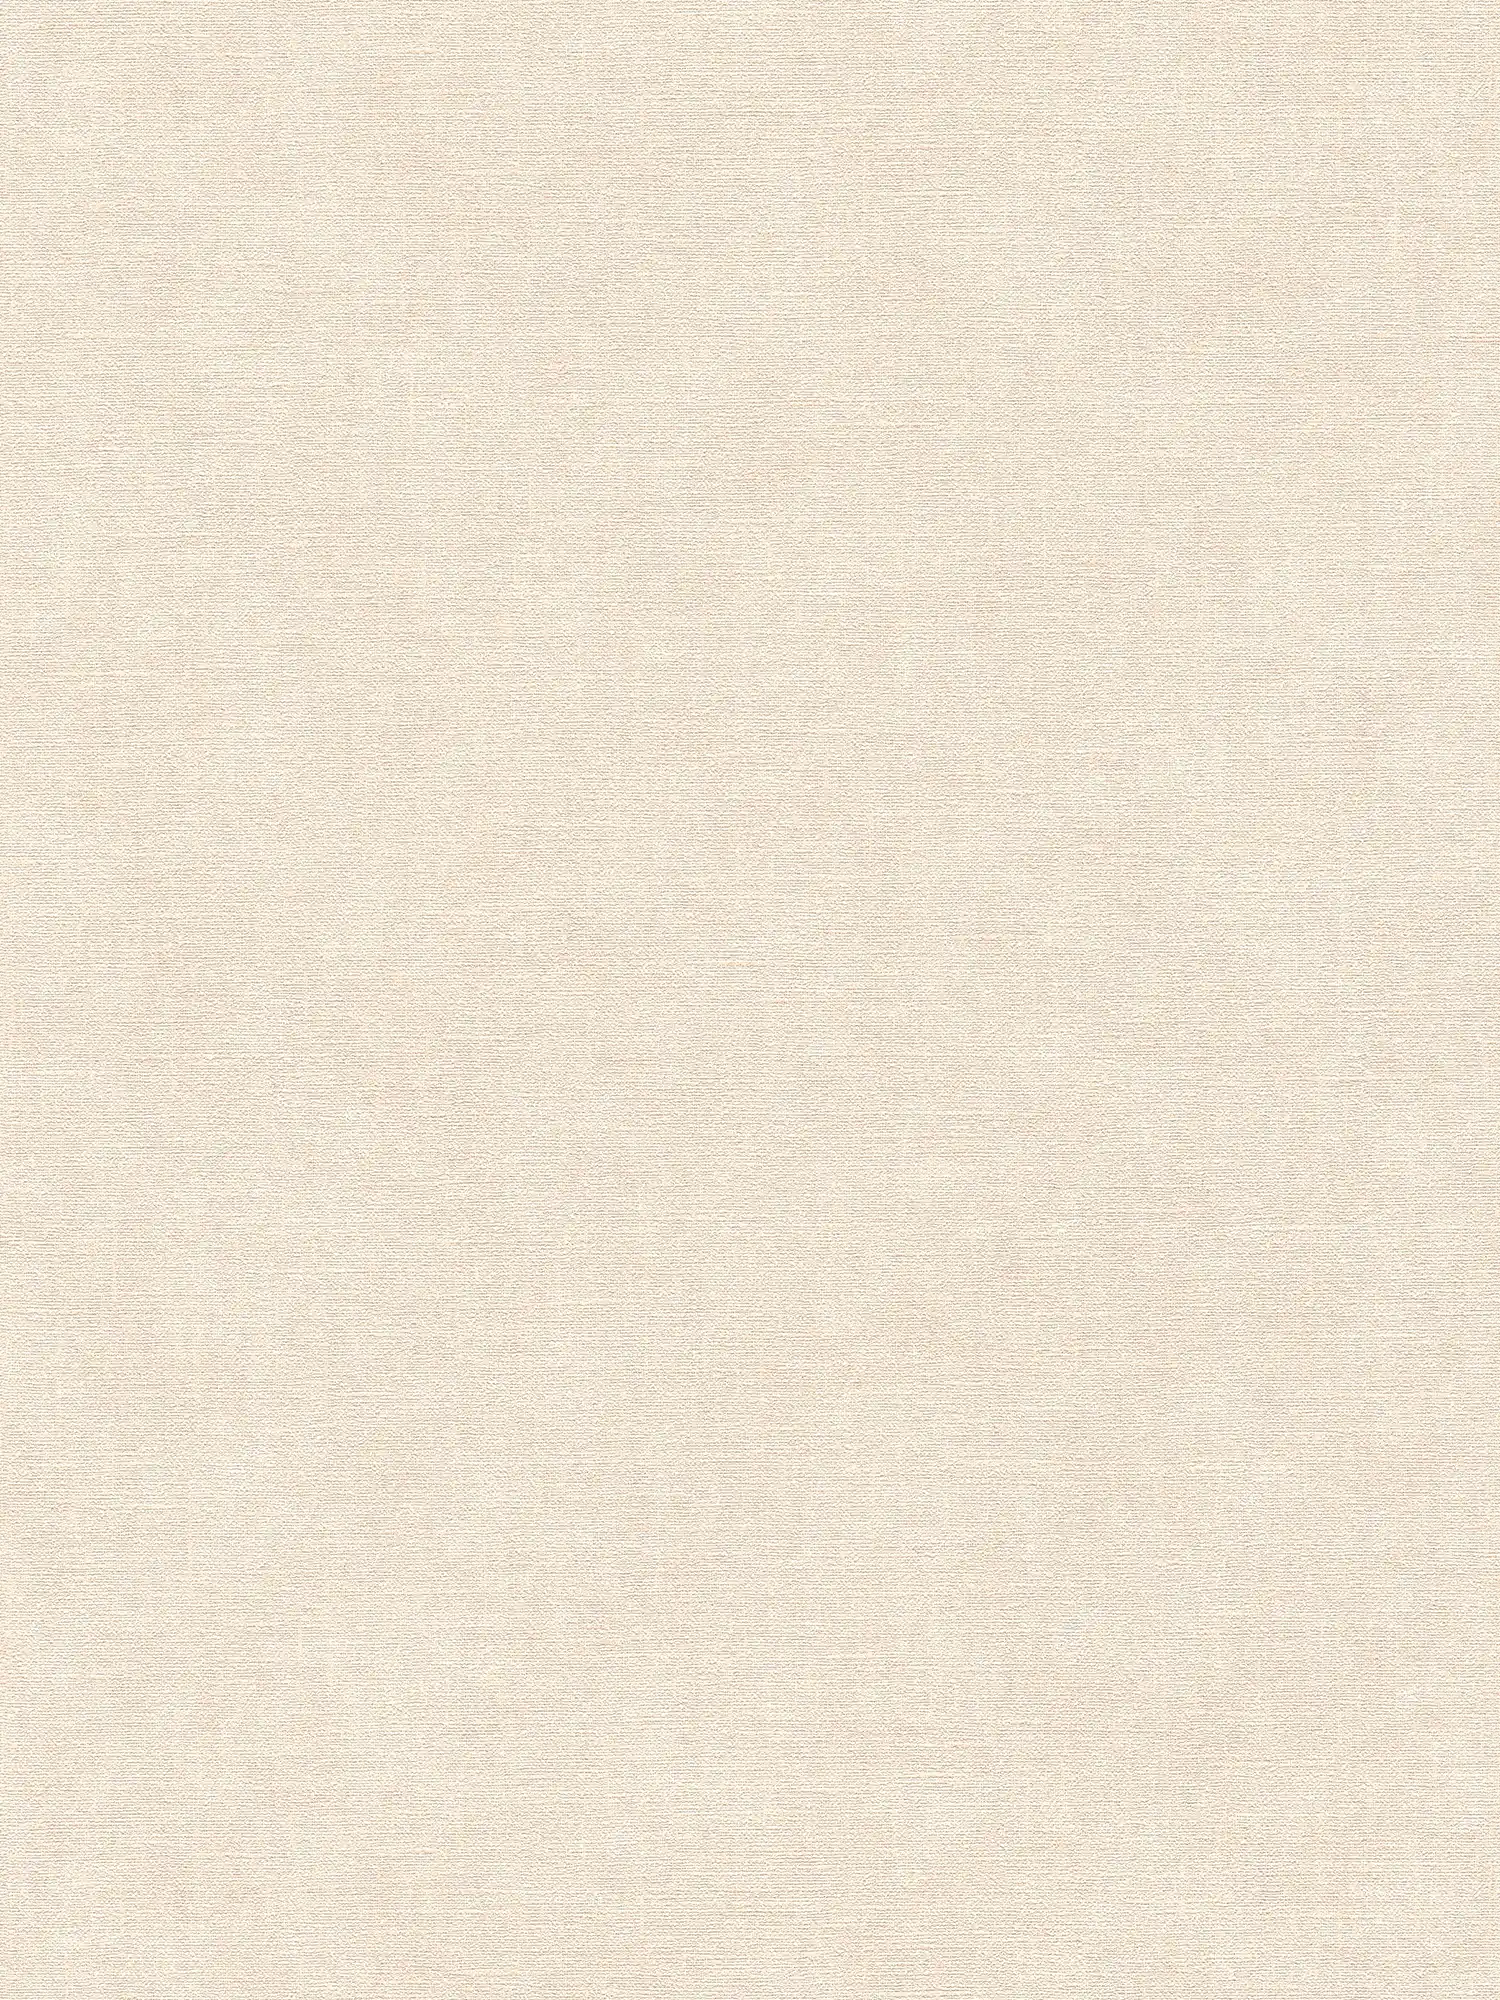 Effen vliesbehang in pleisterlook met lichte textuur - beige, crème
